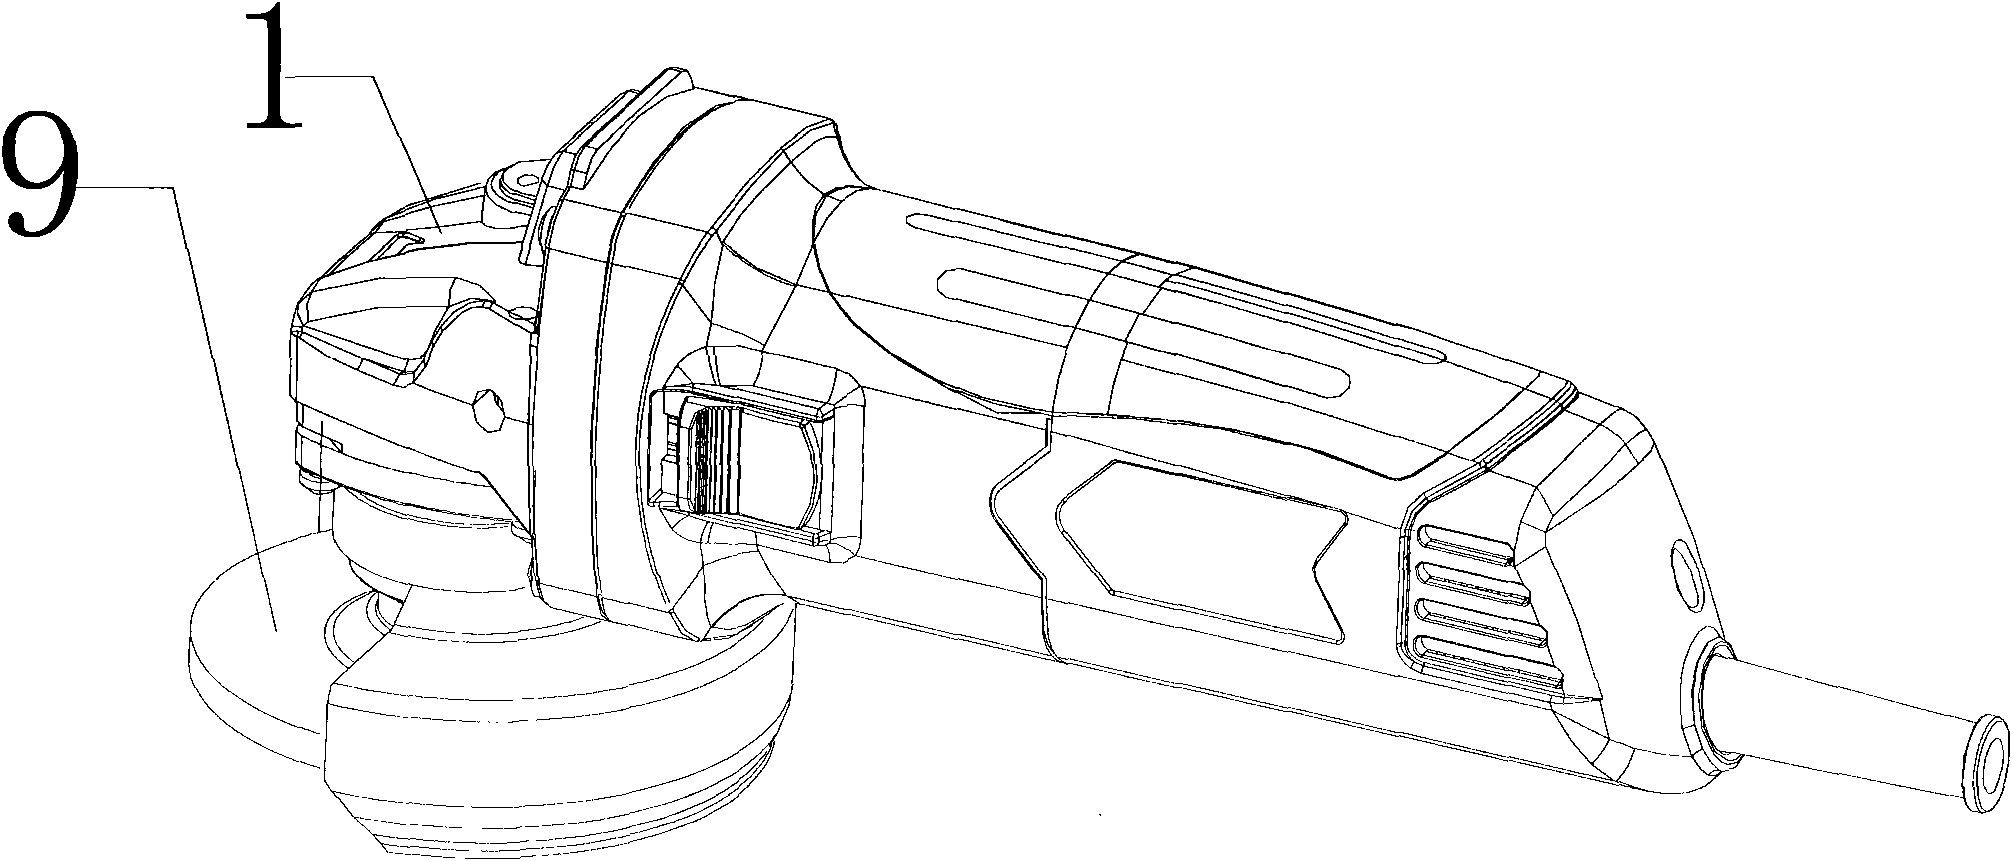 Angle grinder